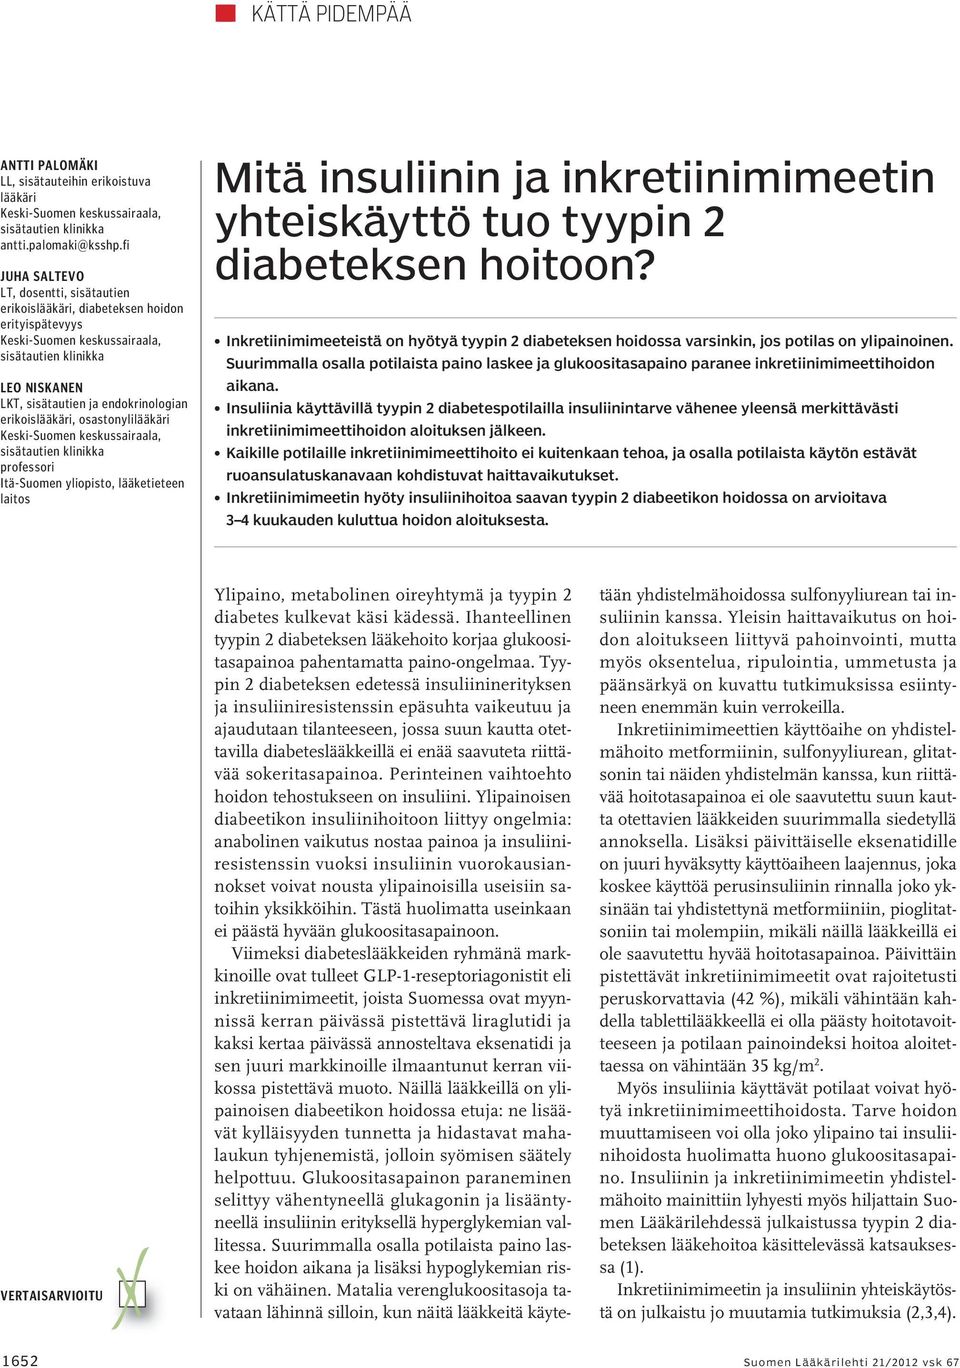 yliopisto, lääketieteen laitos Mitä insuliinin ja inkretiinimimeetin yhteiskäyttö tuo tyypin 2 diabeteksen hoitoon?